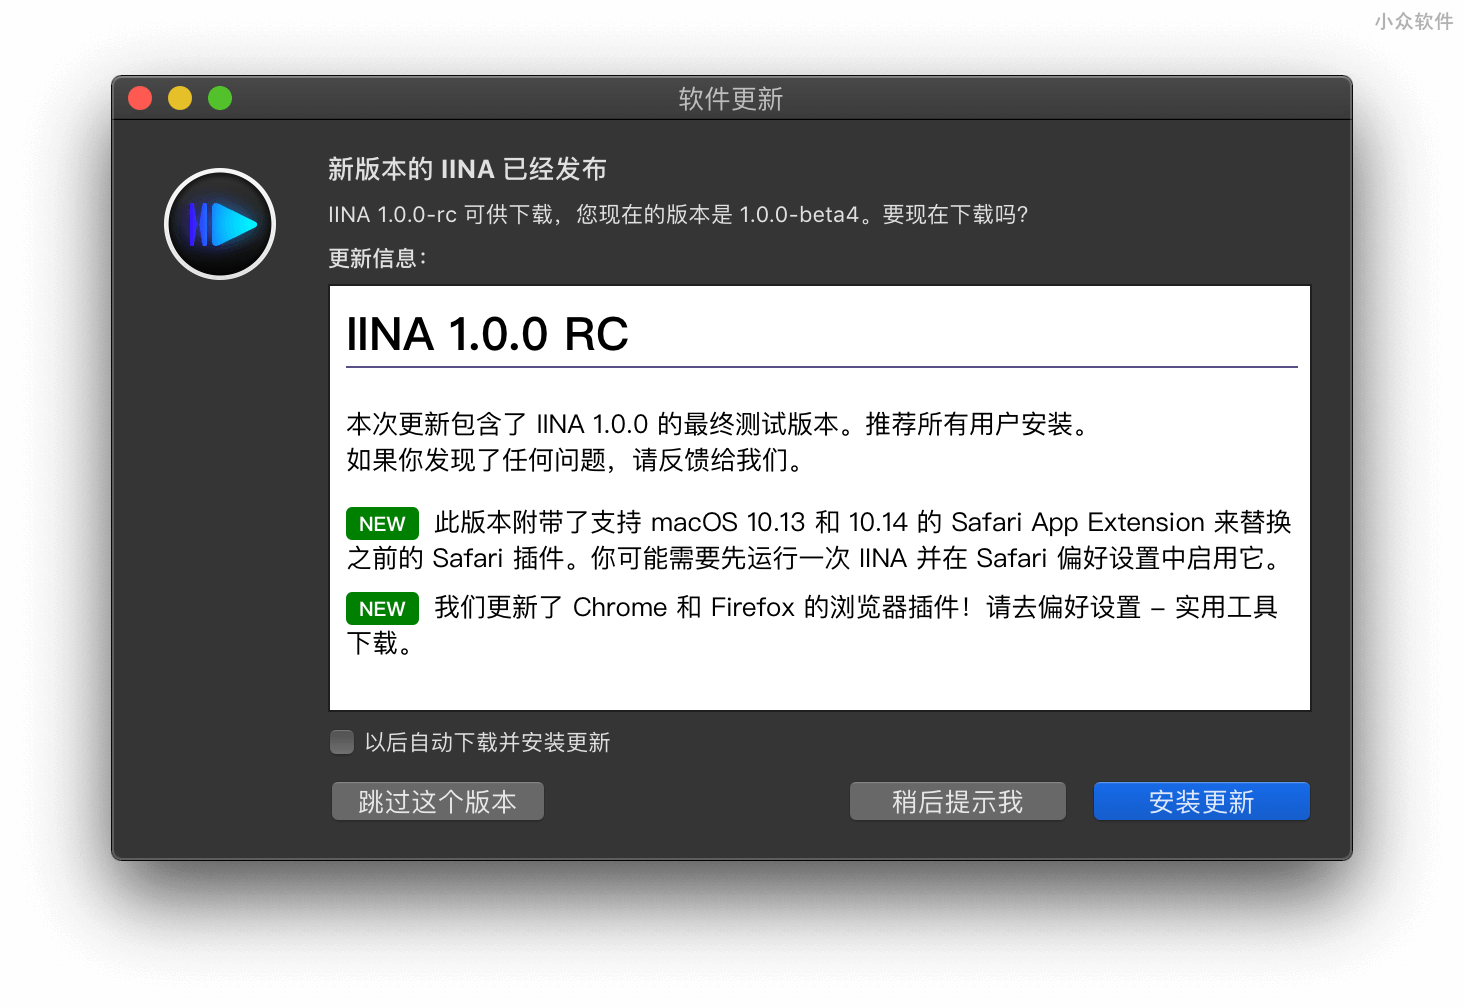 优秀的 macOS 视频播放器 IINA 发布 1.0.0 RC，支持从浏览器播放 2